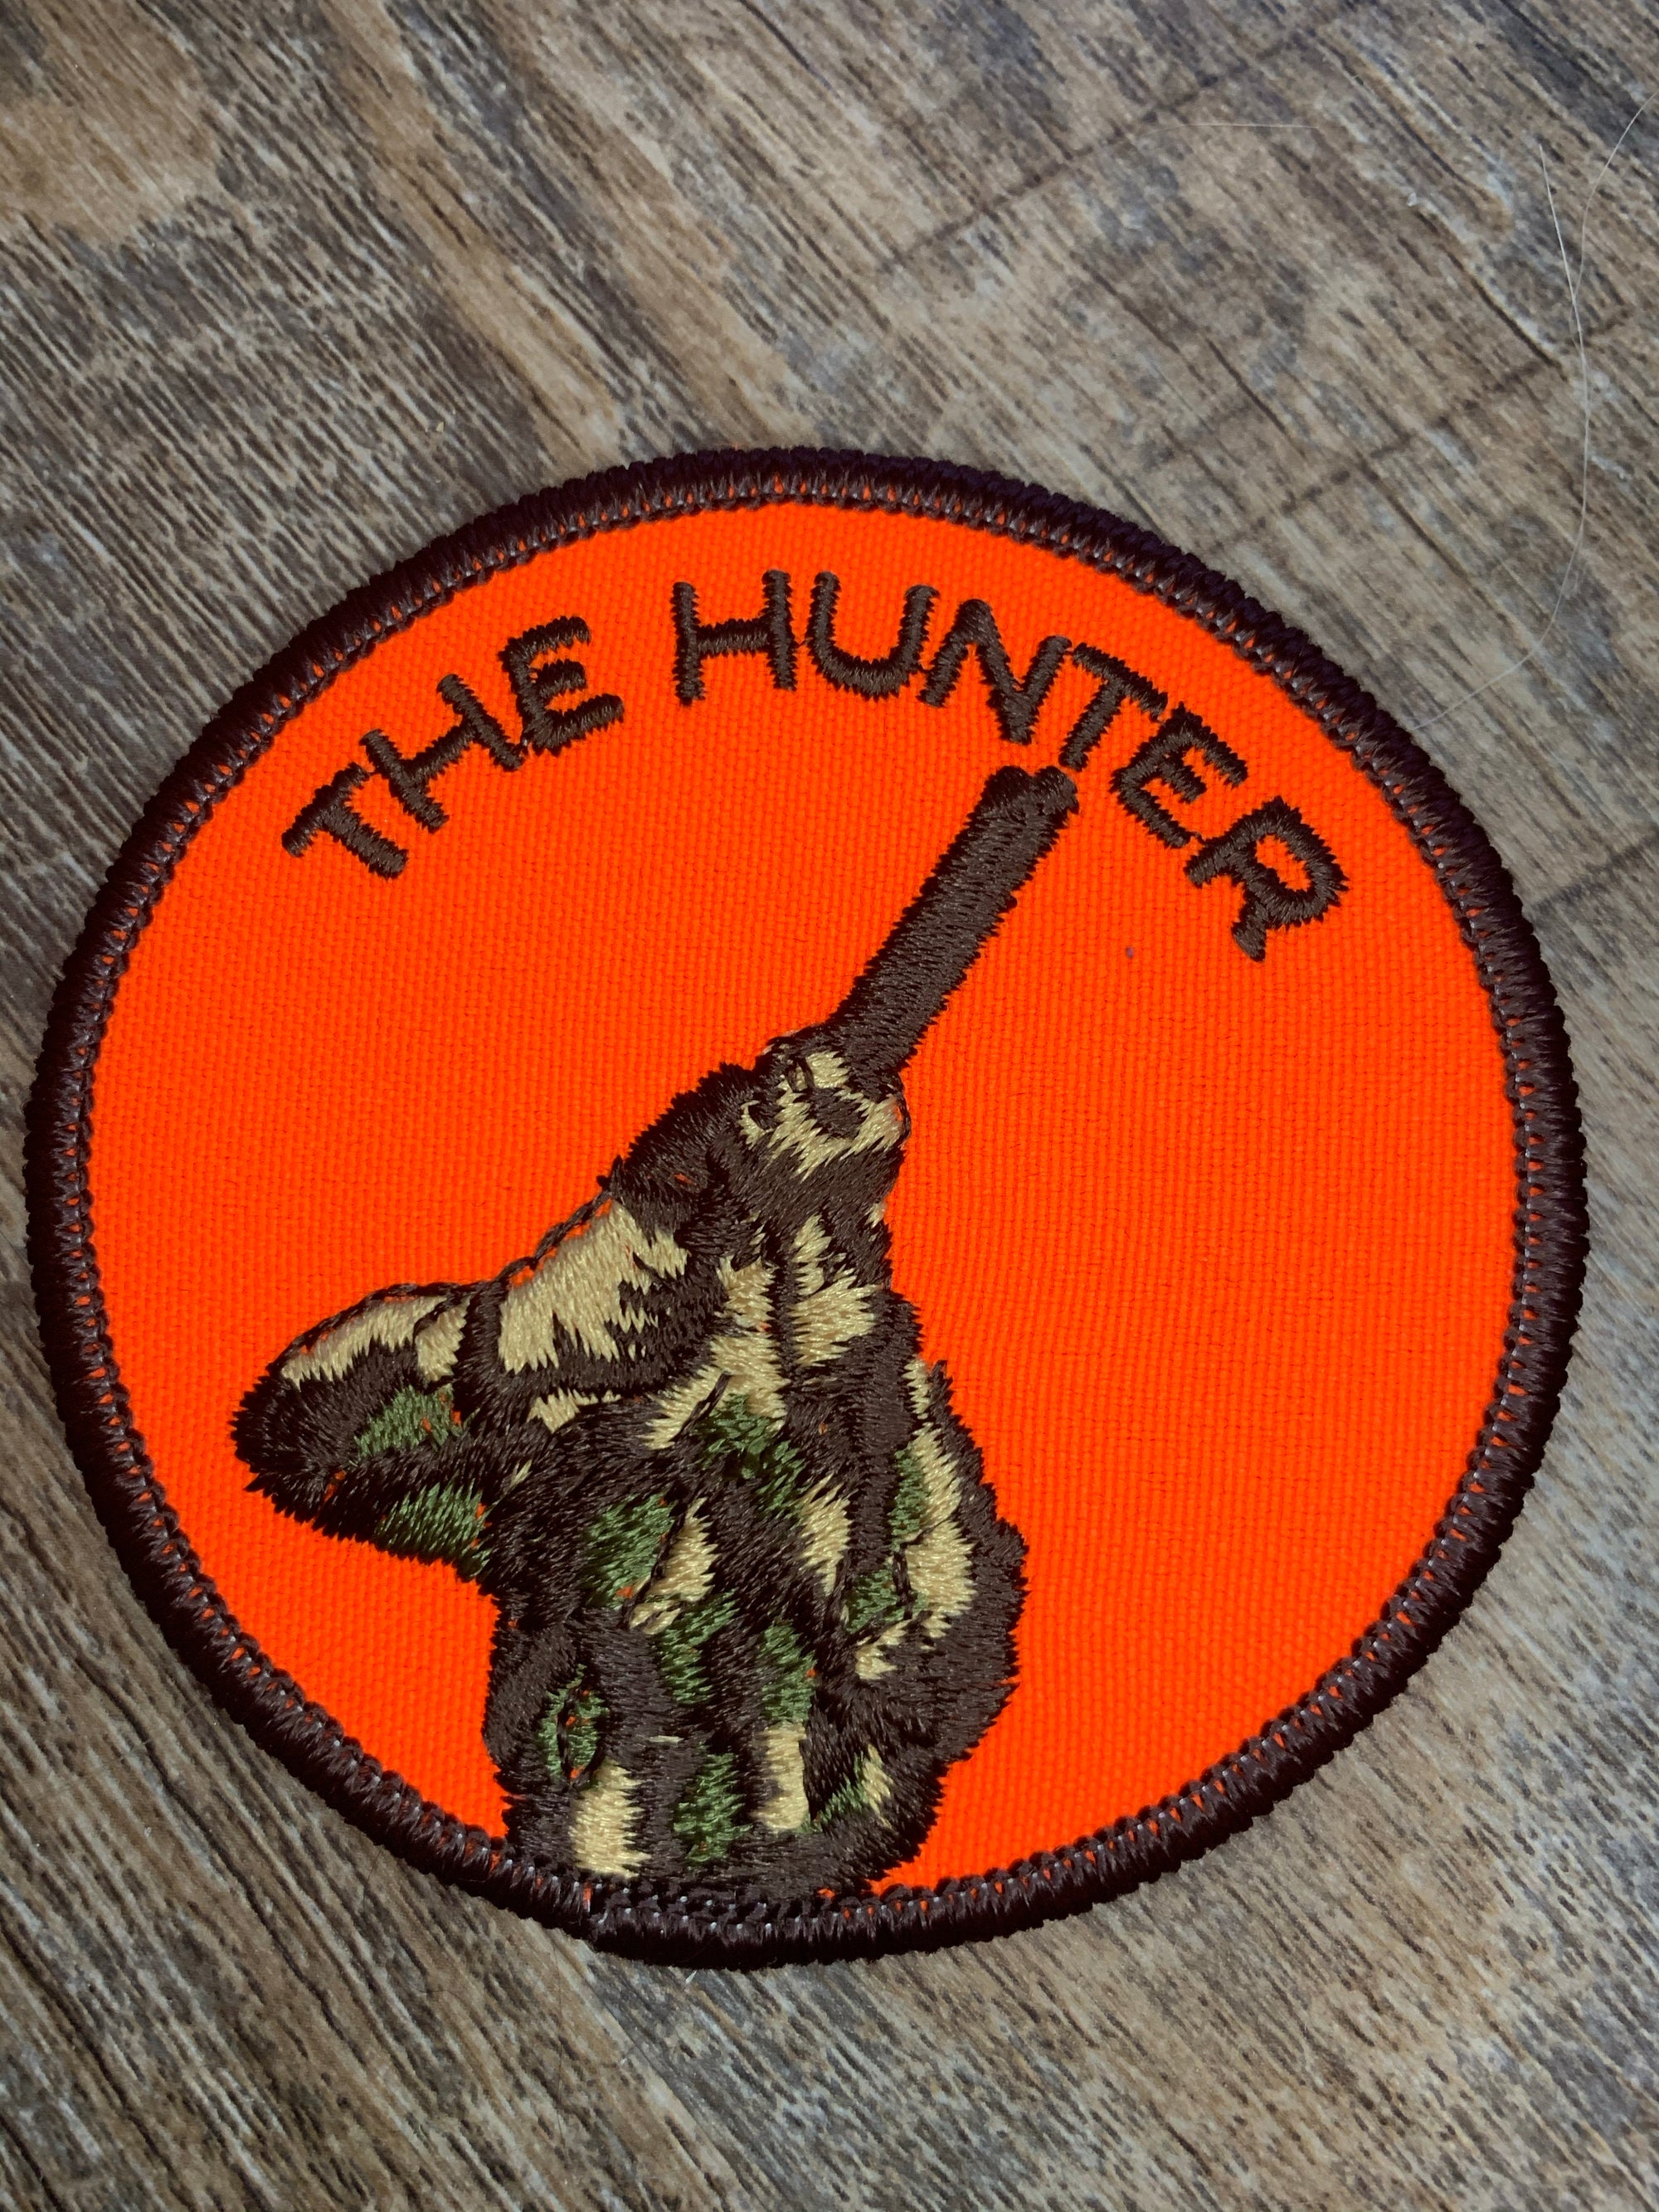 Vintage The Hunter